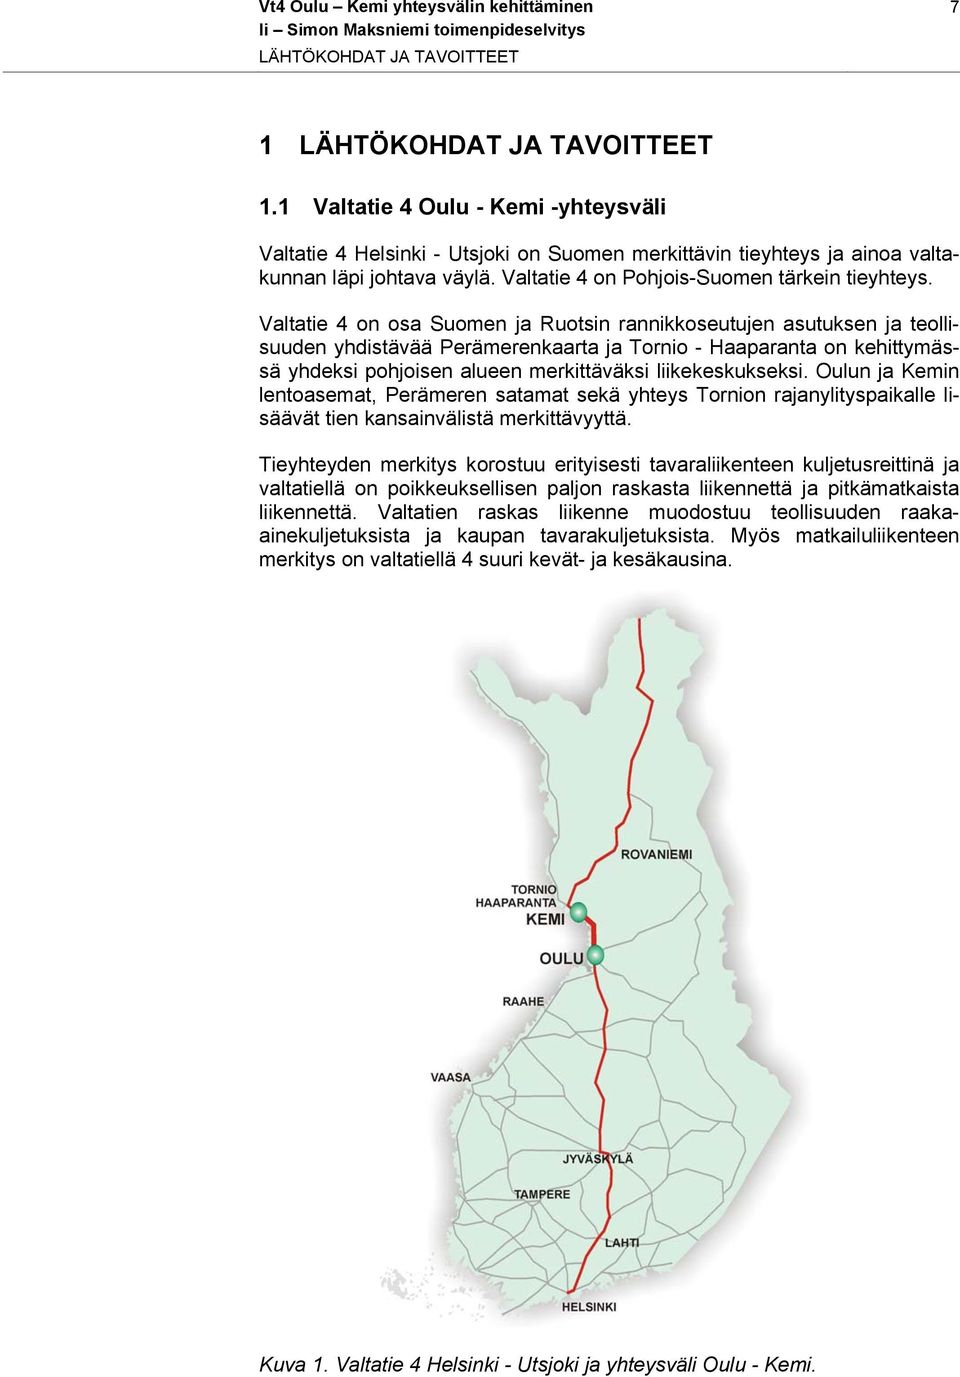 Valtatie 4 on osa Suomen ja Ruotsin rannikkoseutujen asutuksen ja teollisuuden yhdistävää Perämerenkaarta ja Tornio - Haaparanta on kehittymässä yhdeksi pohjoisen alueen merkittäväksi